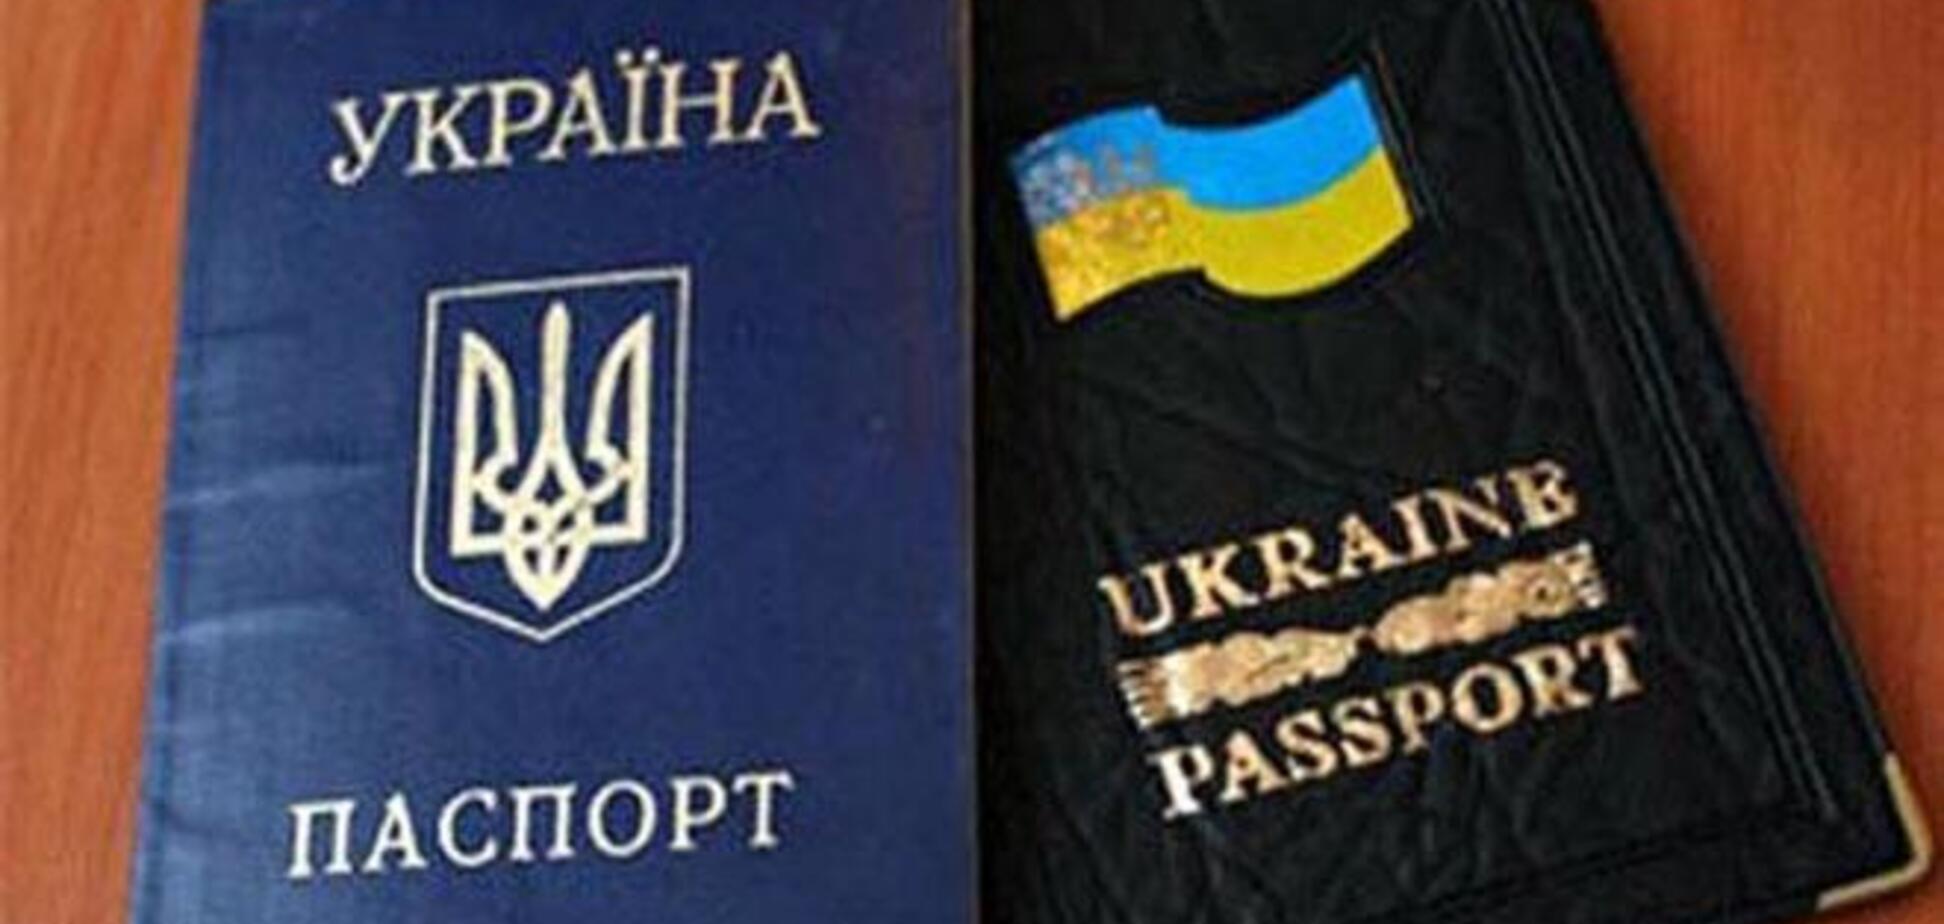 Иностранцы, претендующие на должность главного антикоррупционера, примут украинское гражданство